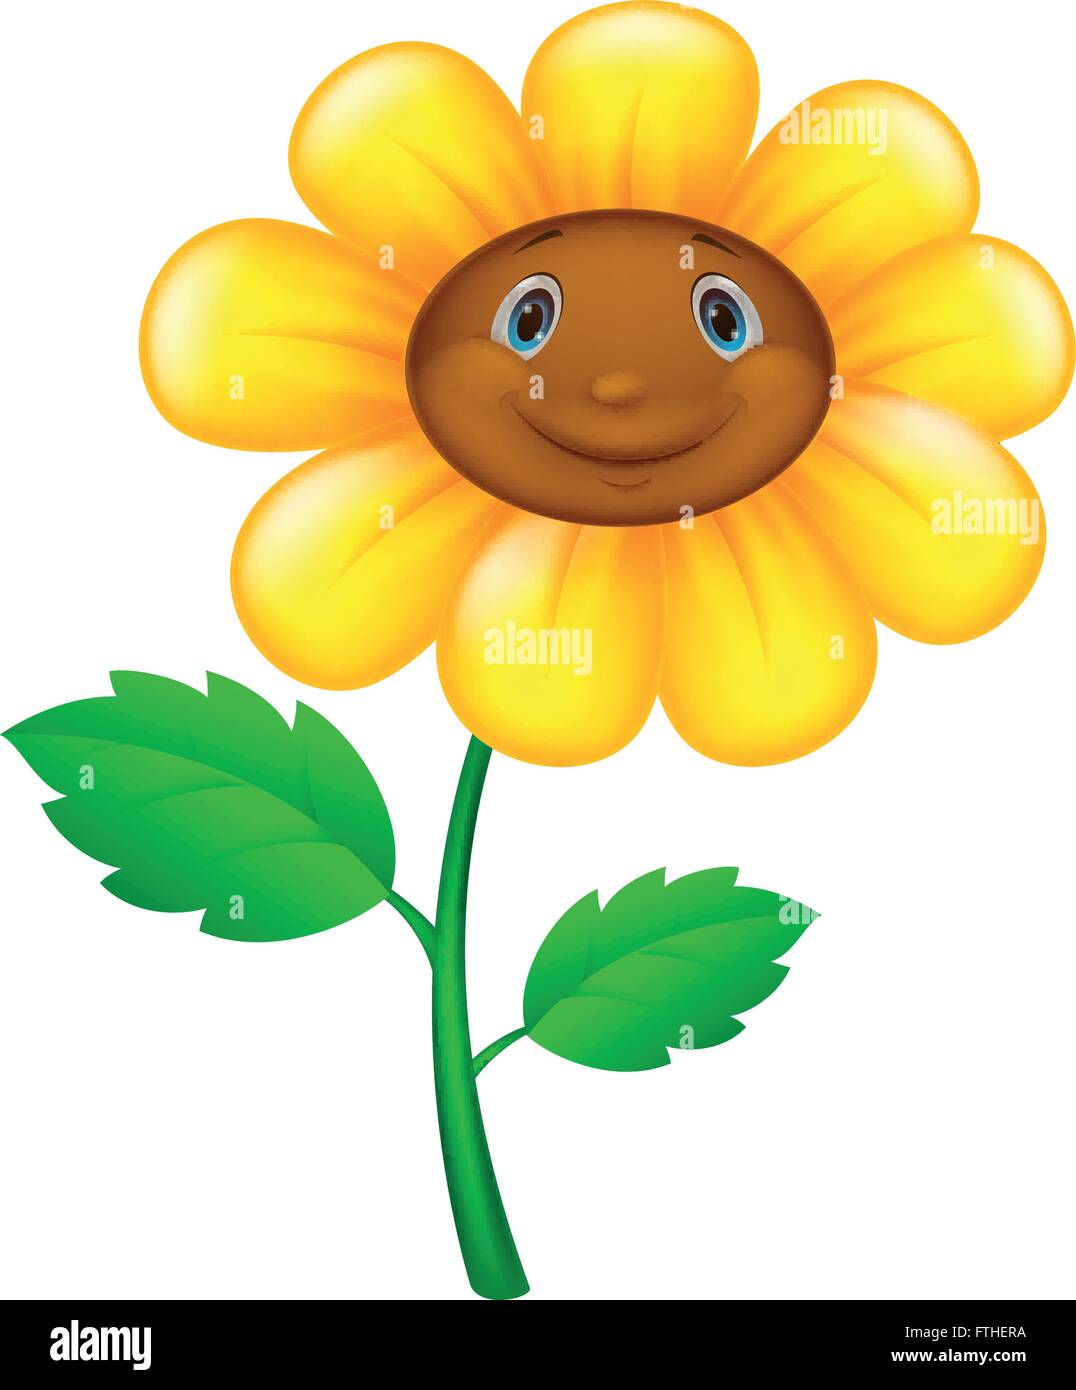 Cartoon-Blume mit Gesicht Stock-Vektorgrafik - Alamy